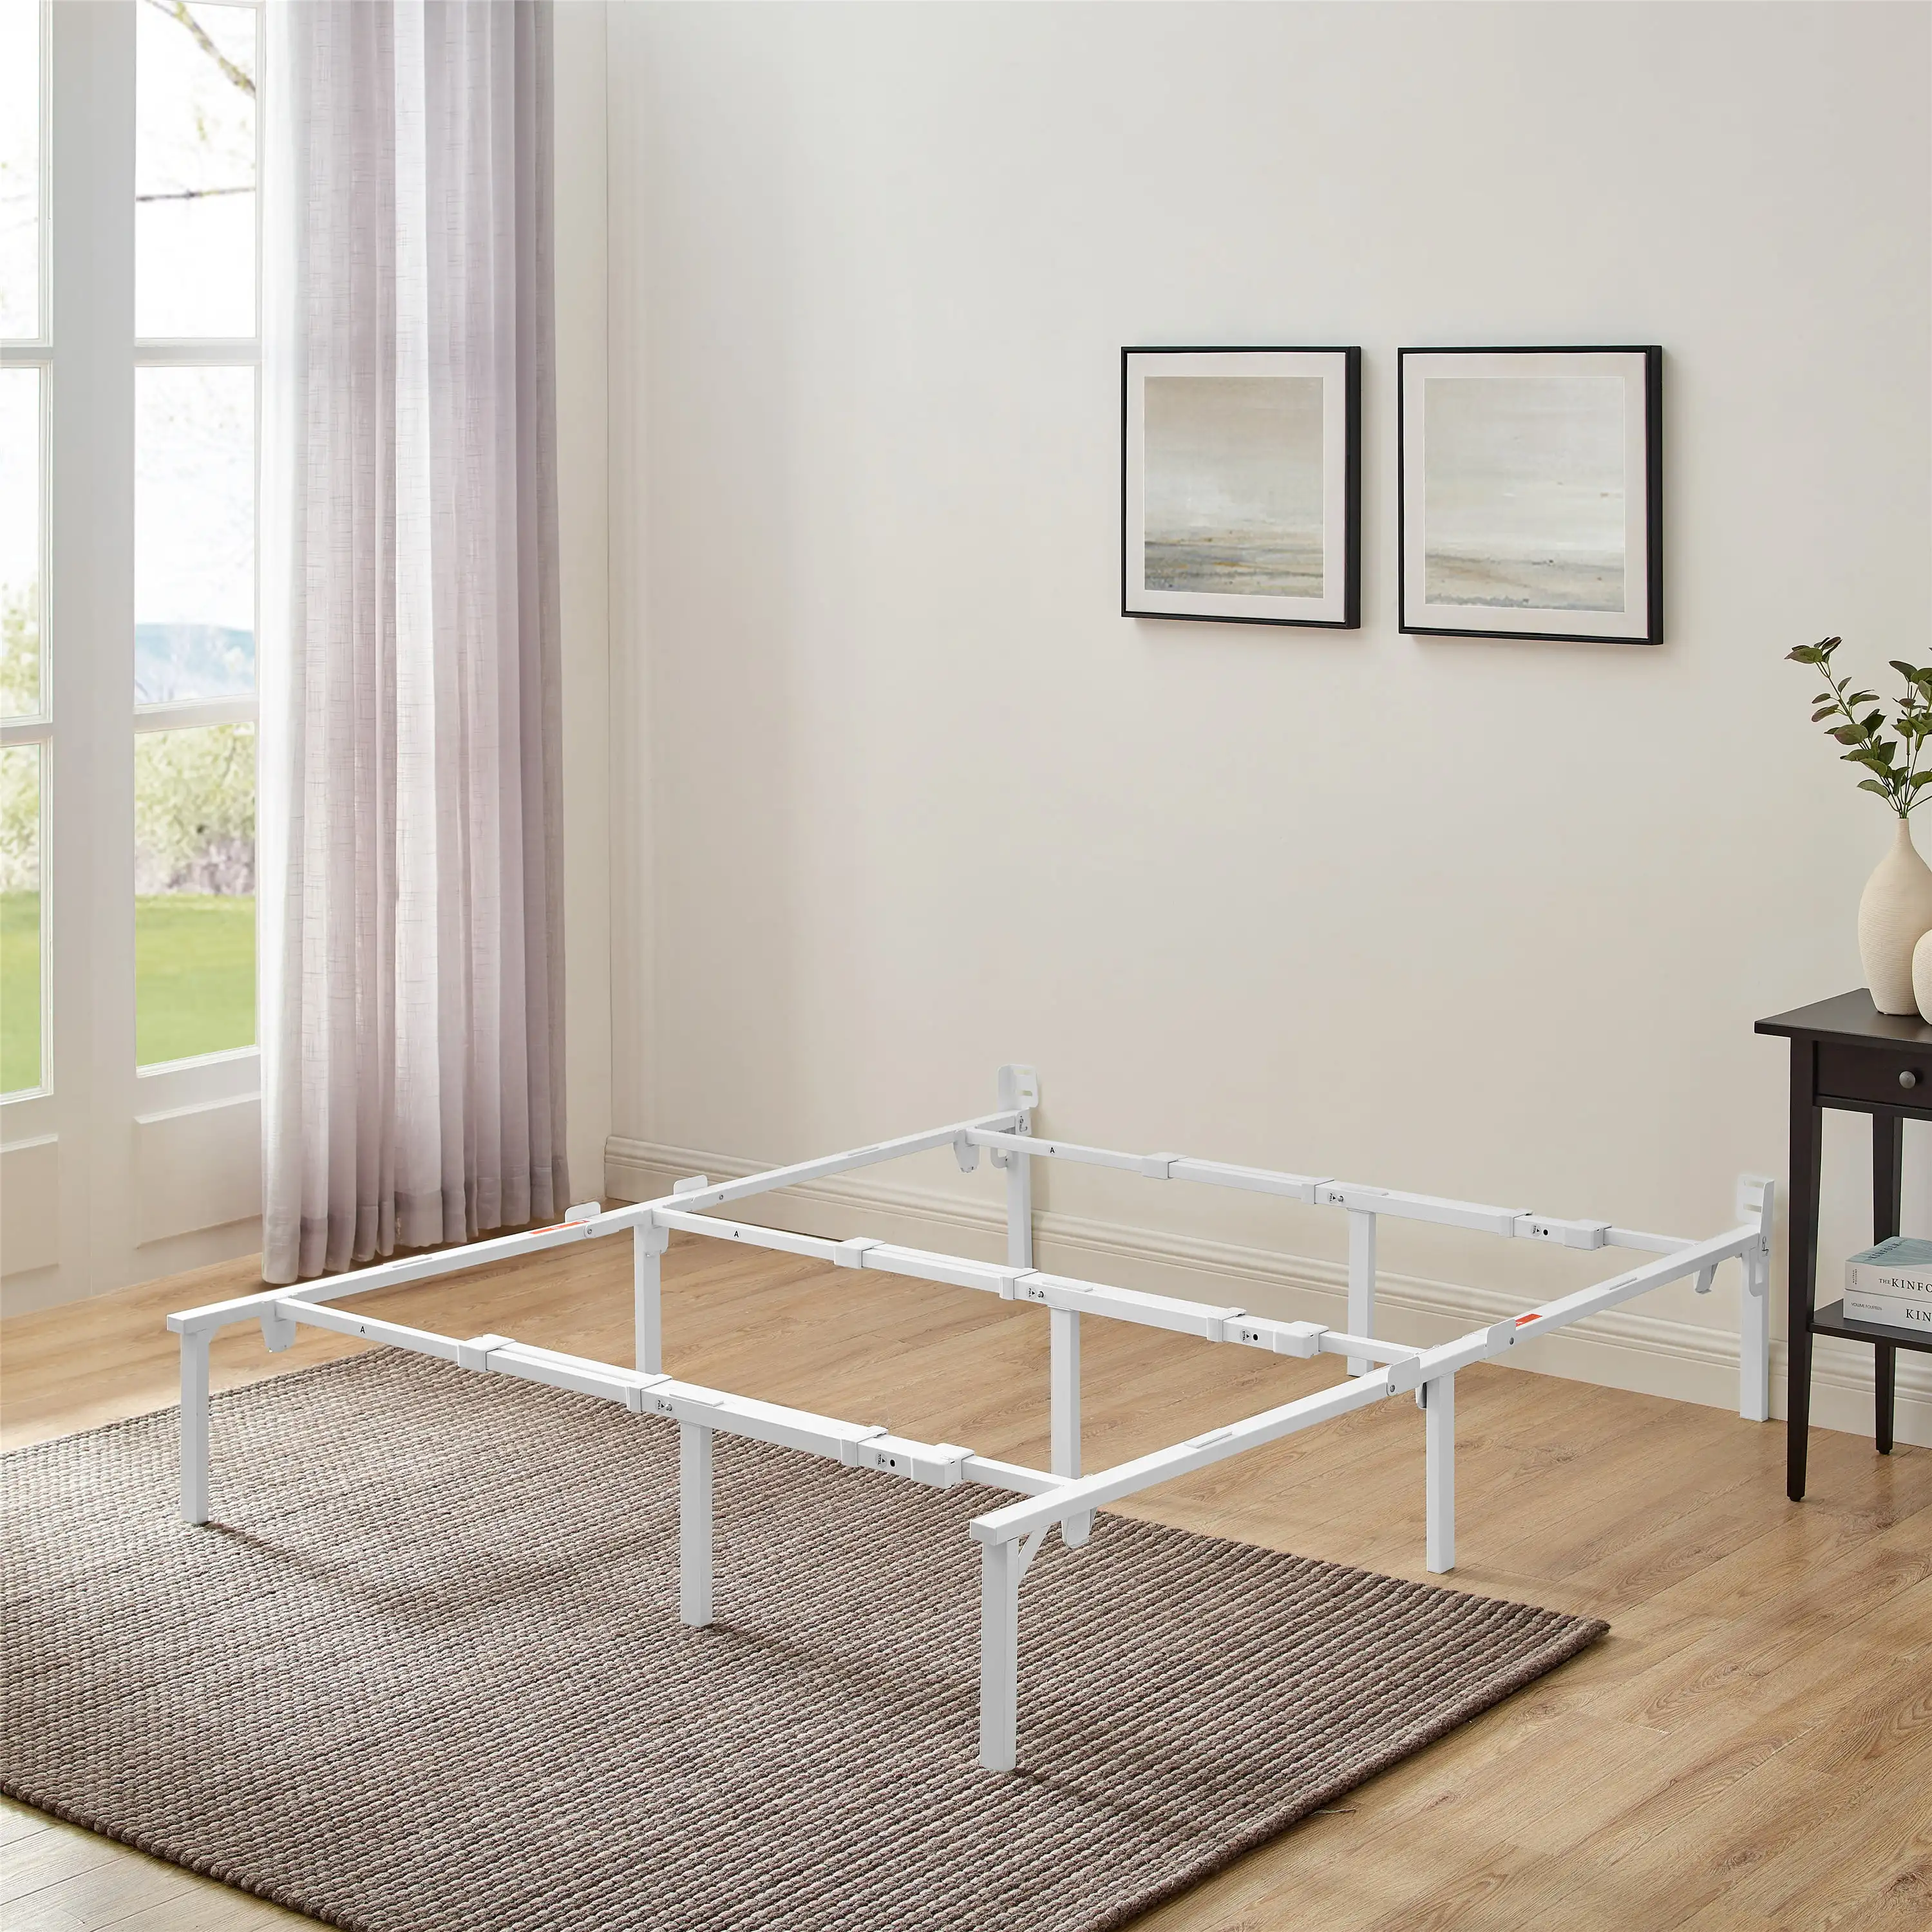 

Mainstays 12" Adjustable Metal Platform Bed Frame, White, Twin - King